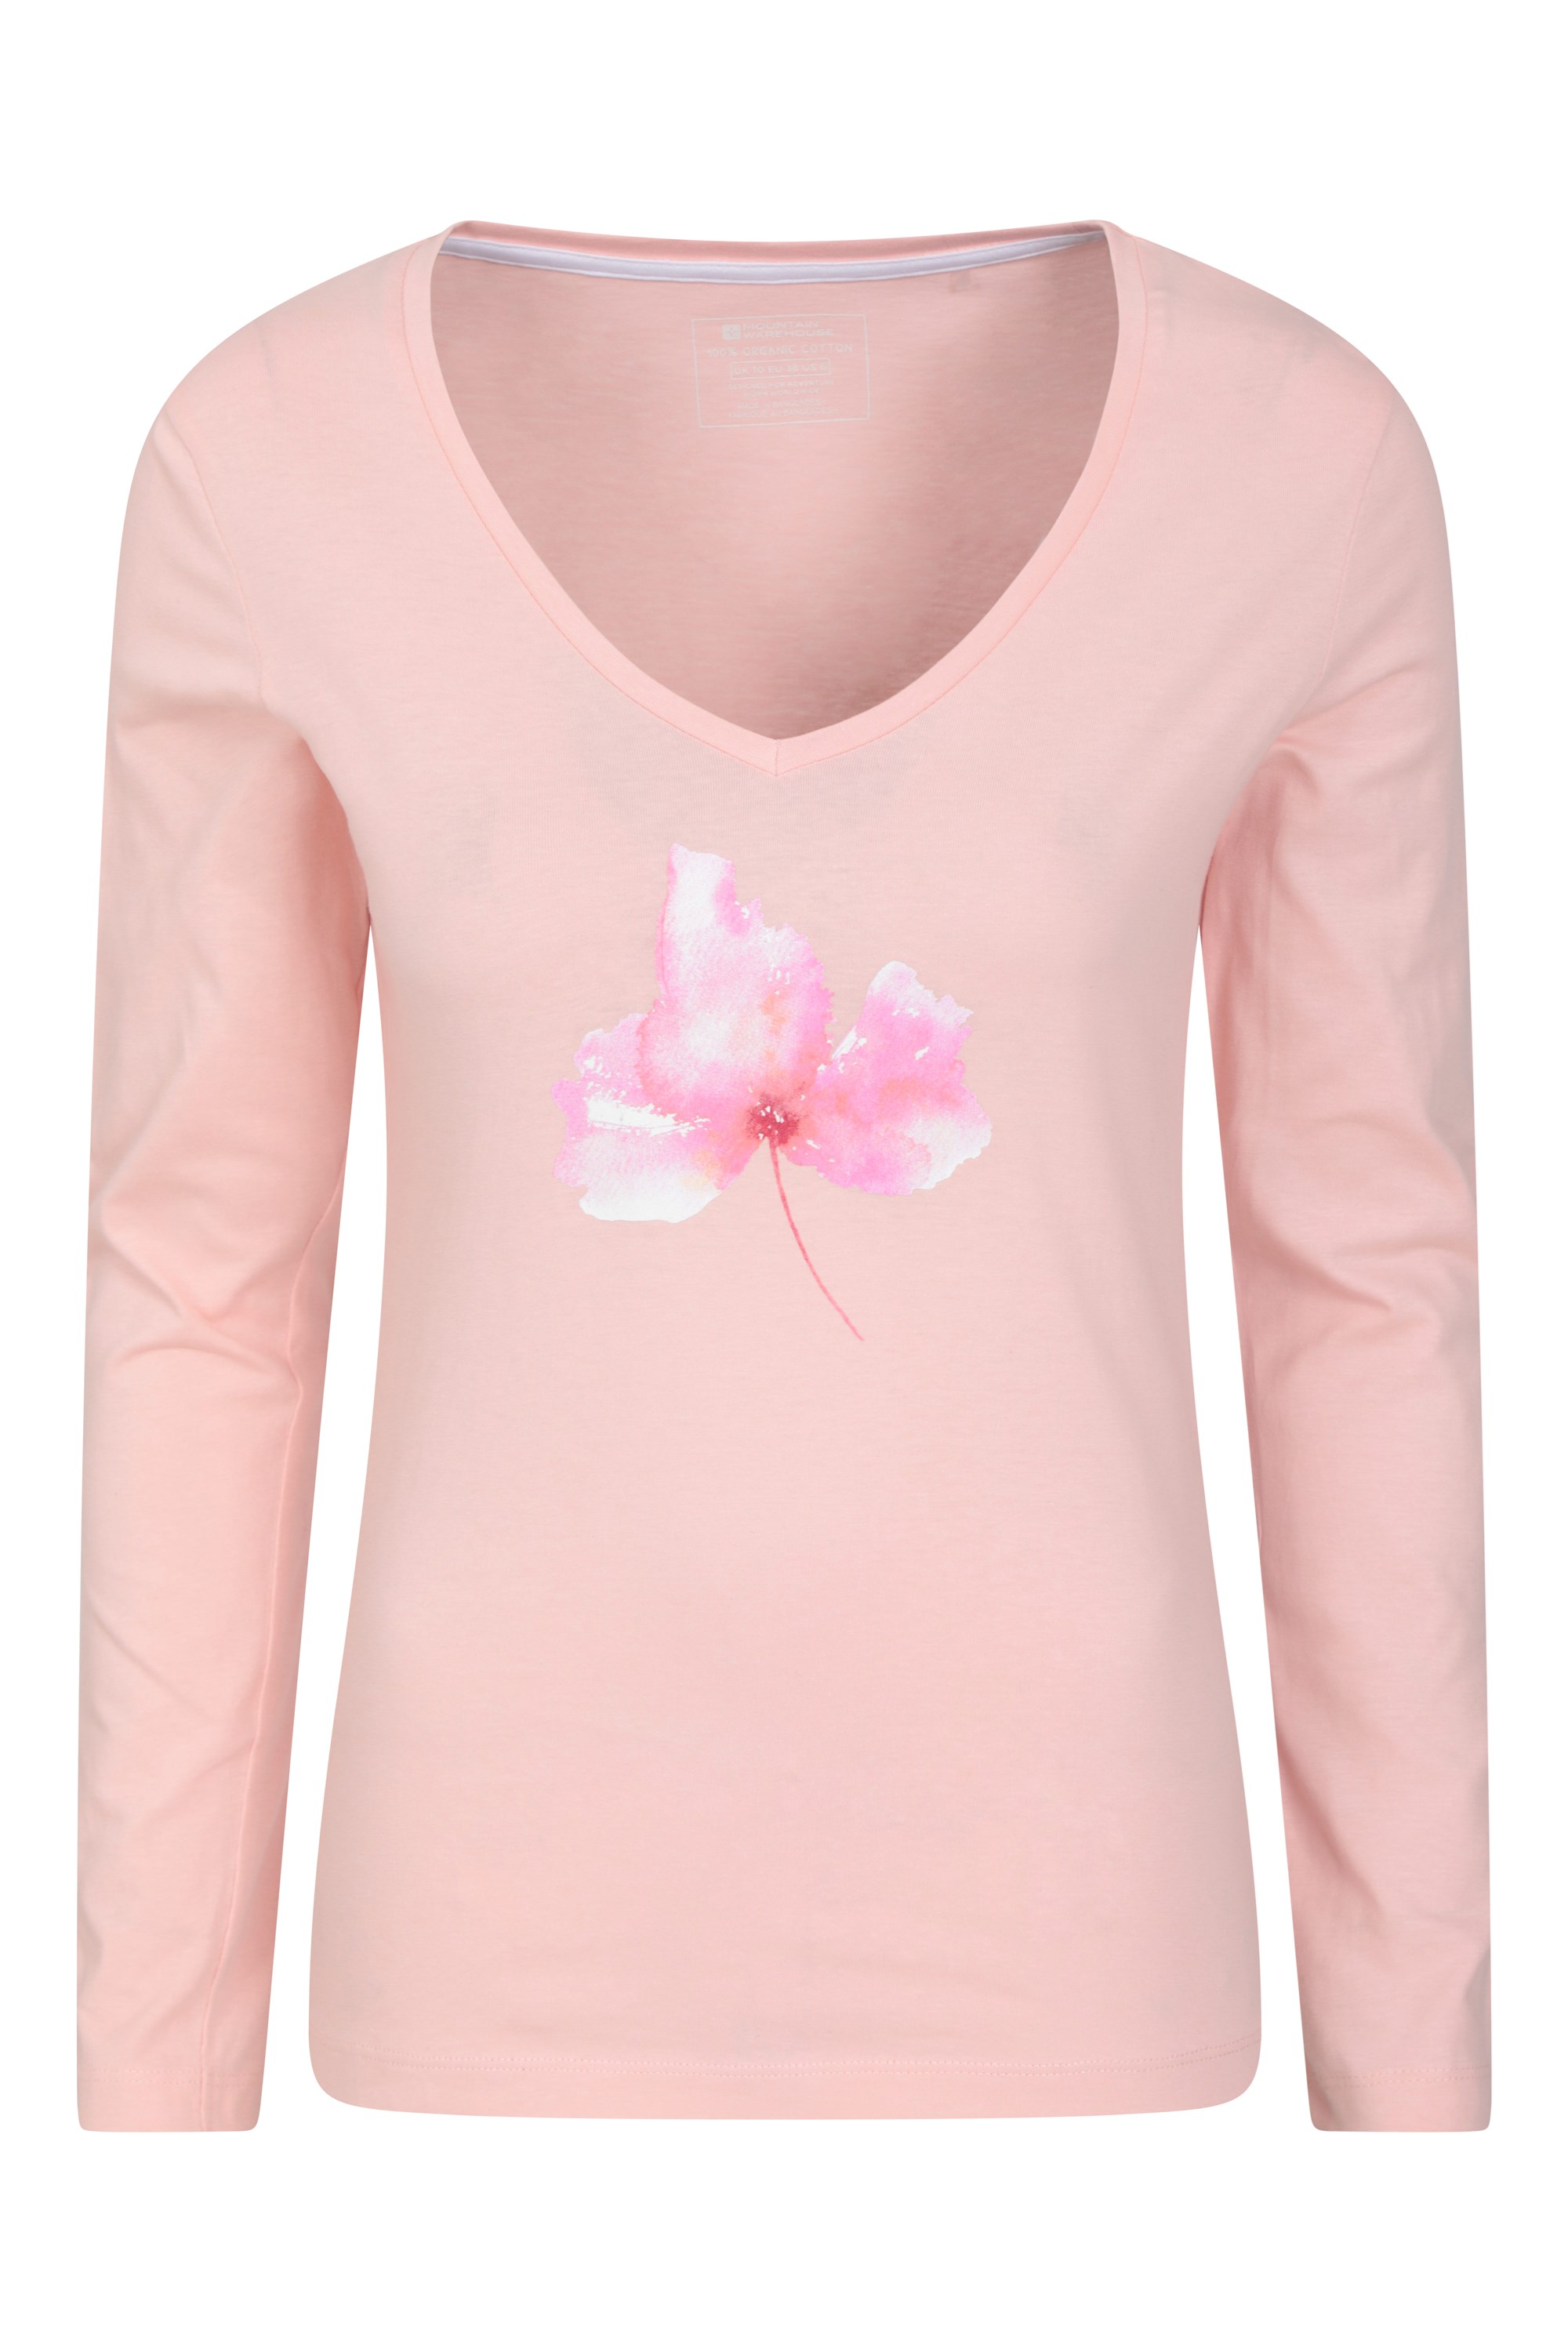 T-shirt damski organiczny z kwiatem - Pink